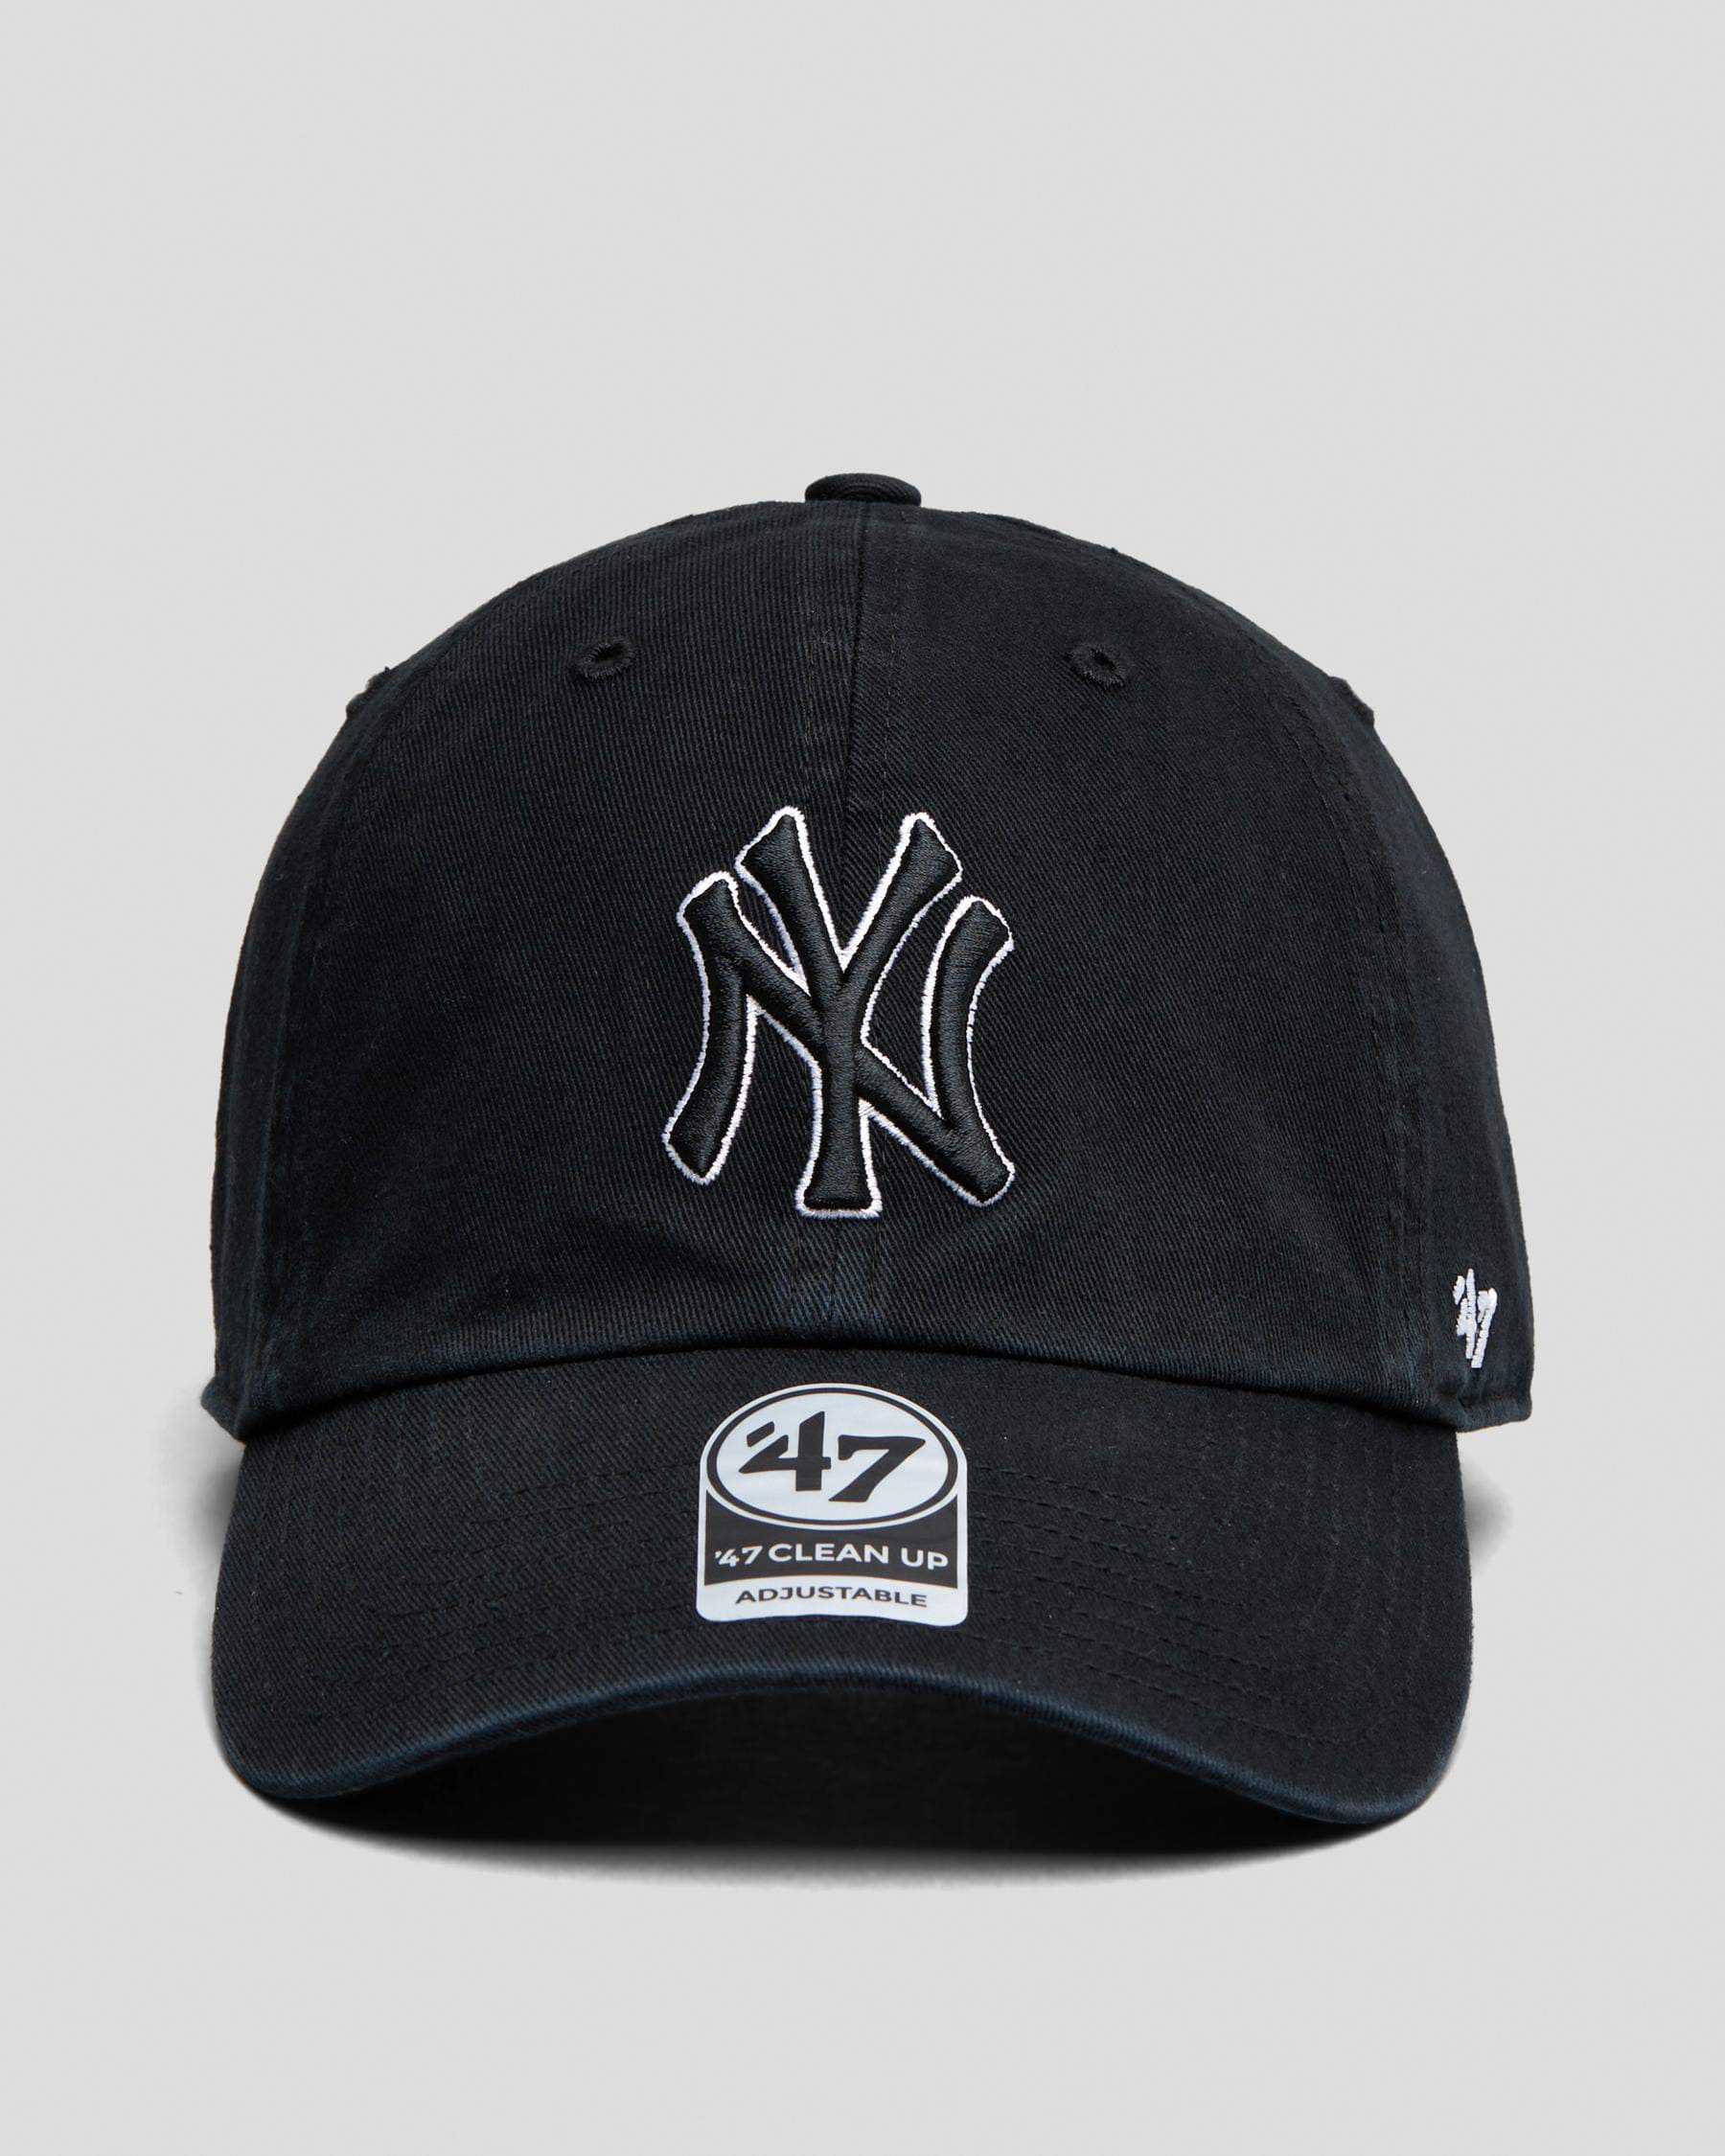 New York Yankees Gray 47 Clean Up Cap